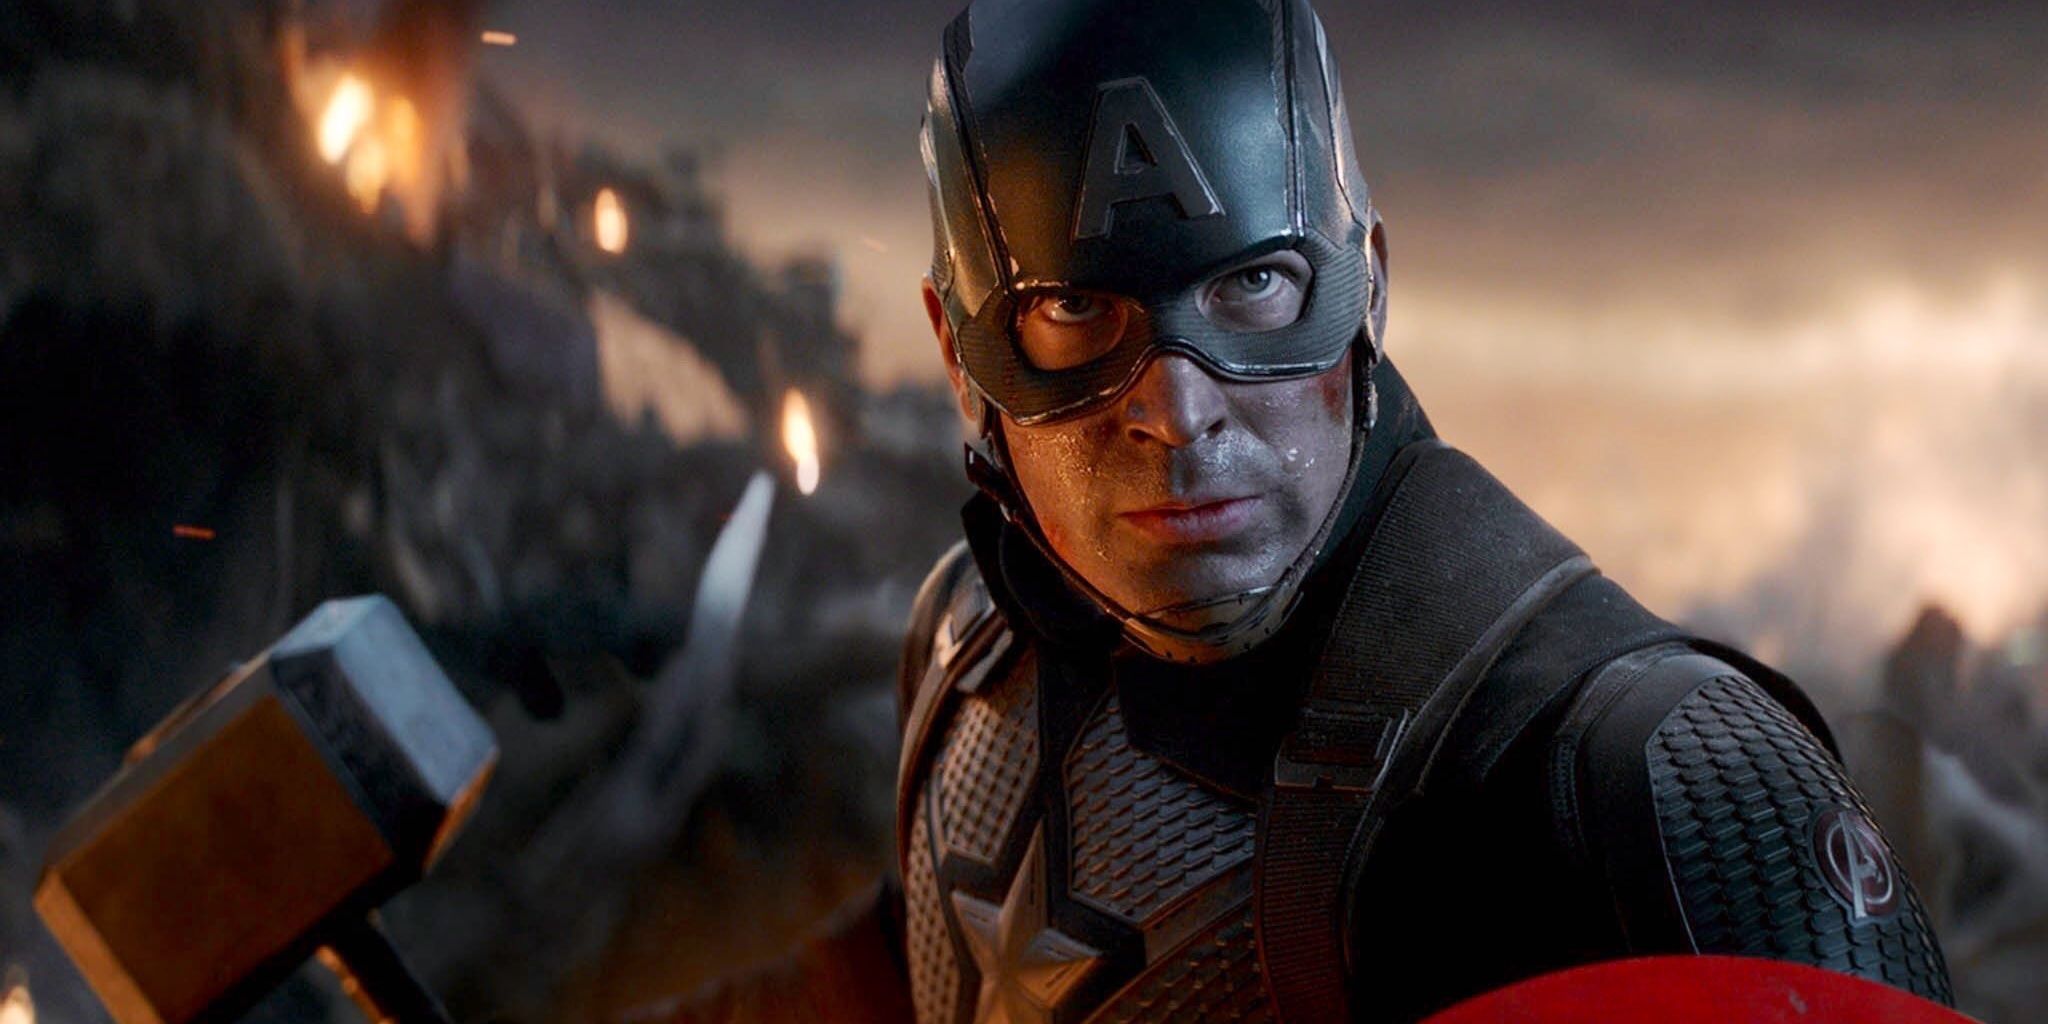 Captain America wielding Thor's hammer in Avengers Endgame